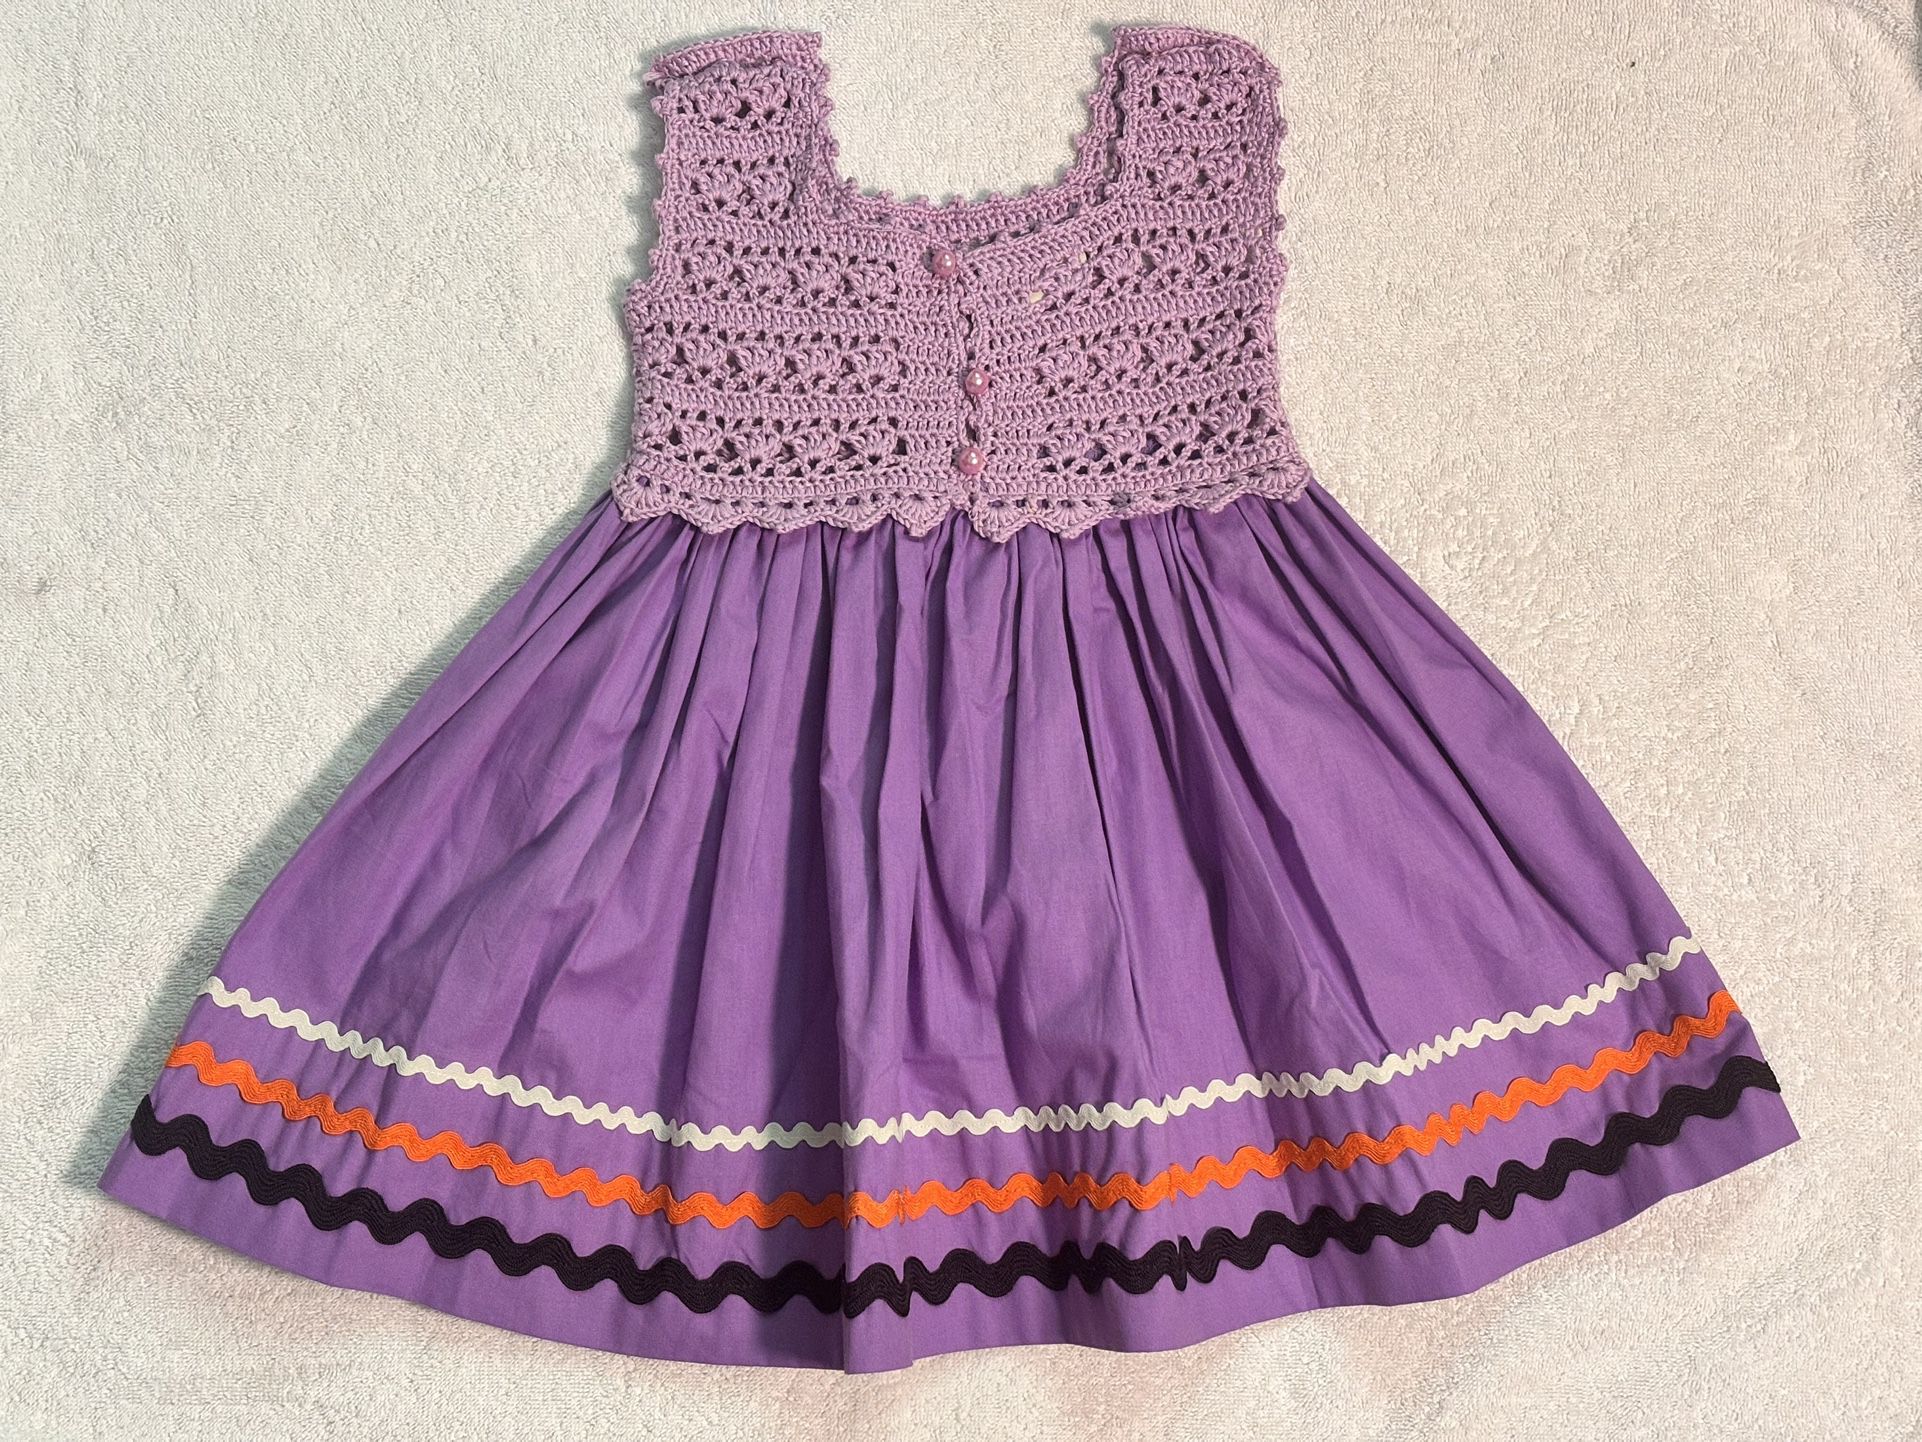 Girls crochet And cotton dress